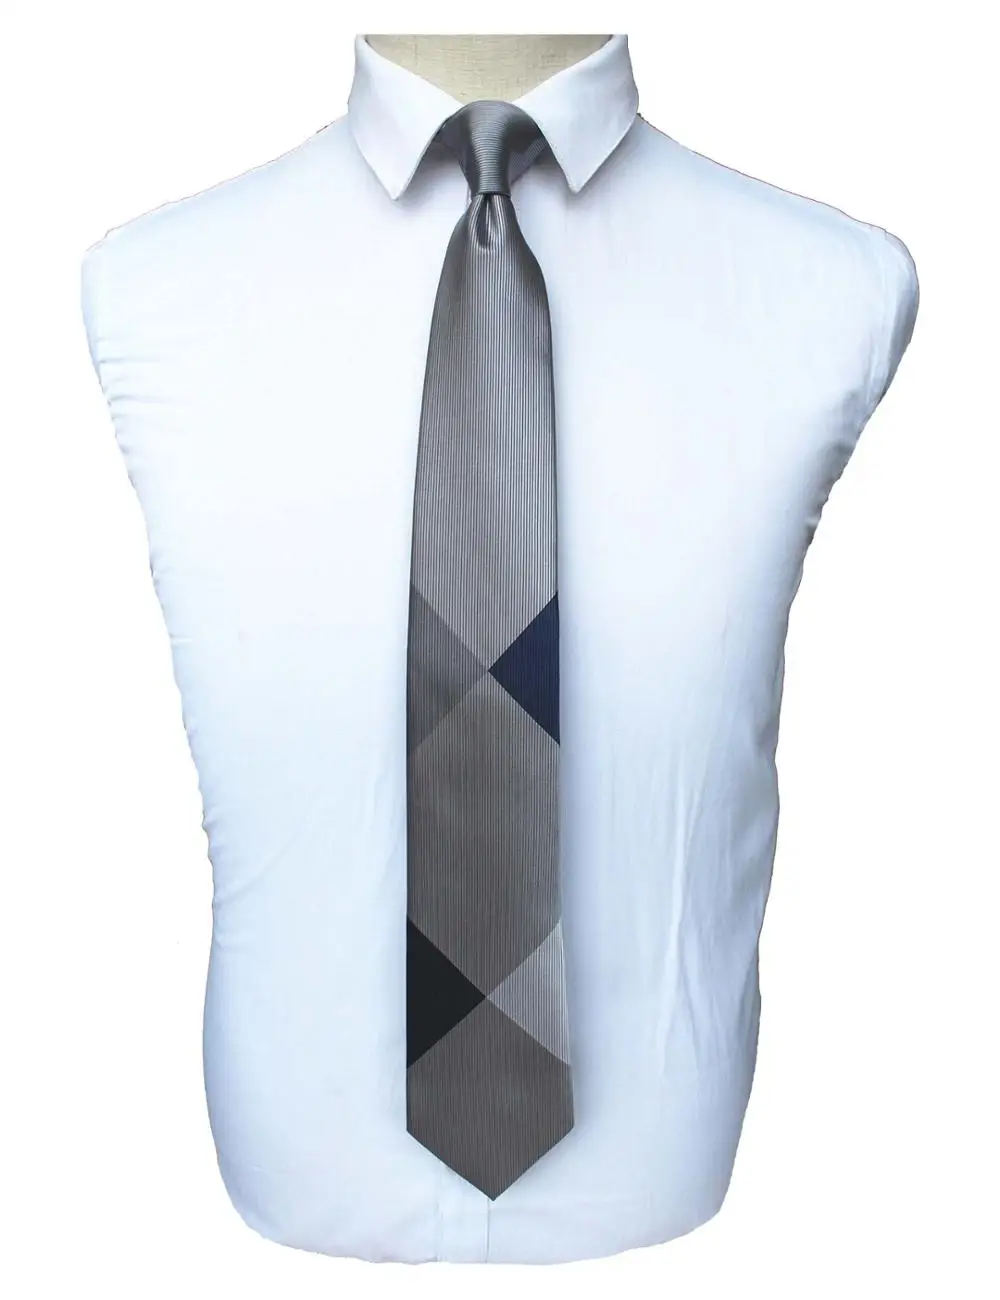 JEMYGINS дизайн модный клетчатый галстук брендовый Шелковый клетчатый мужской галстук высокое качество шейный галстук для вашей белой рубашки - Цвет: 7